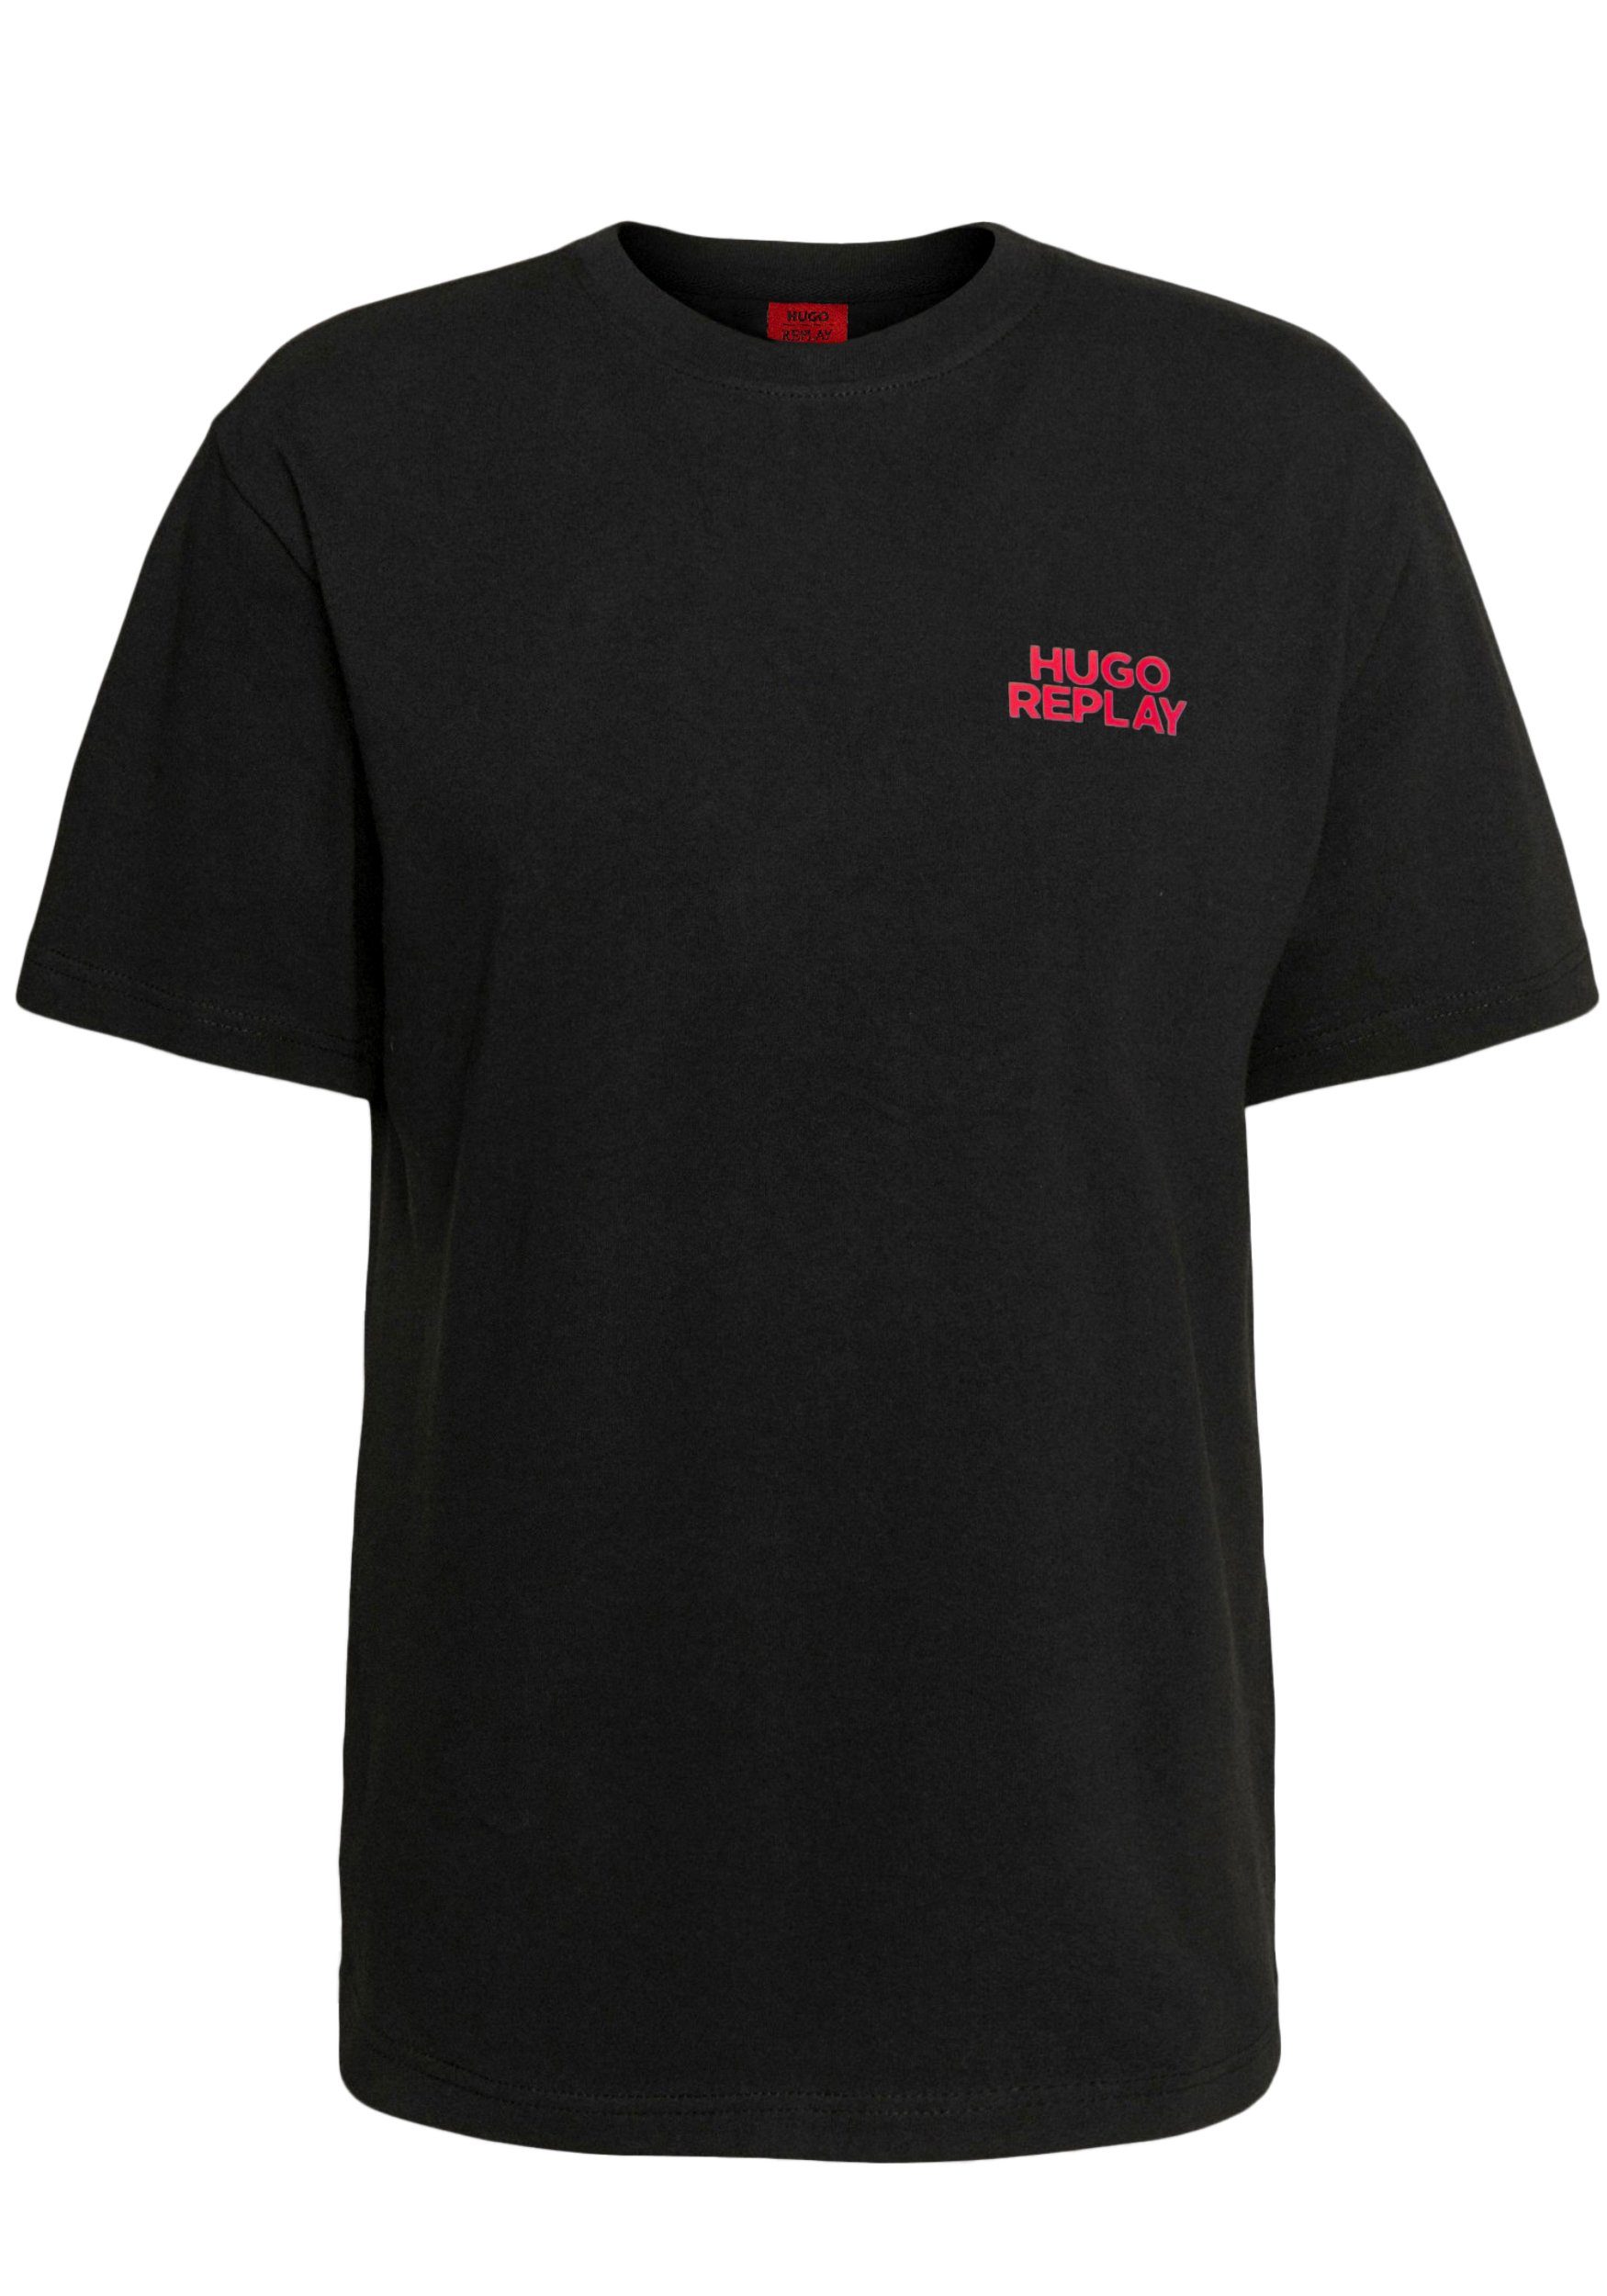 HUGO T-Shirt Hugo Boss Replay Herren Shirt mit Logo auf der Brust Schwarz